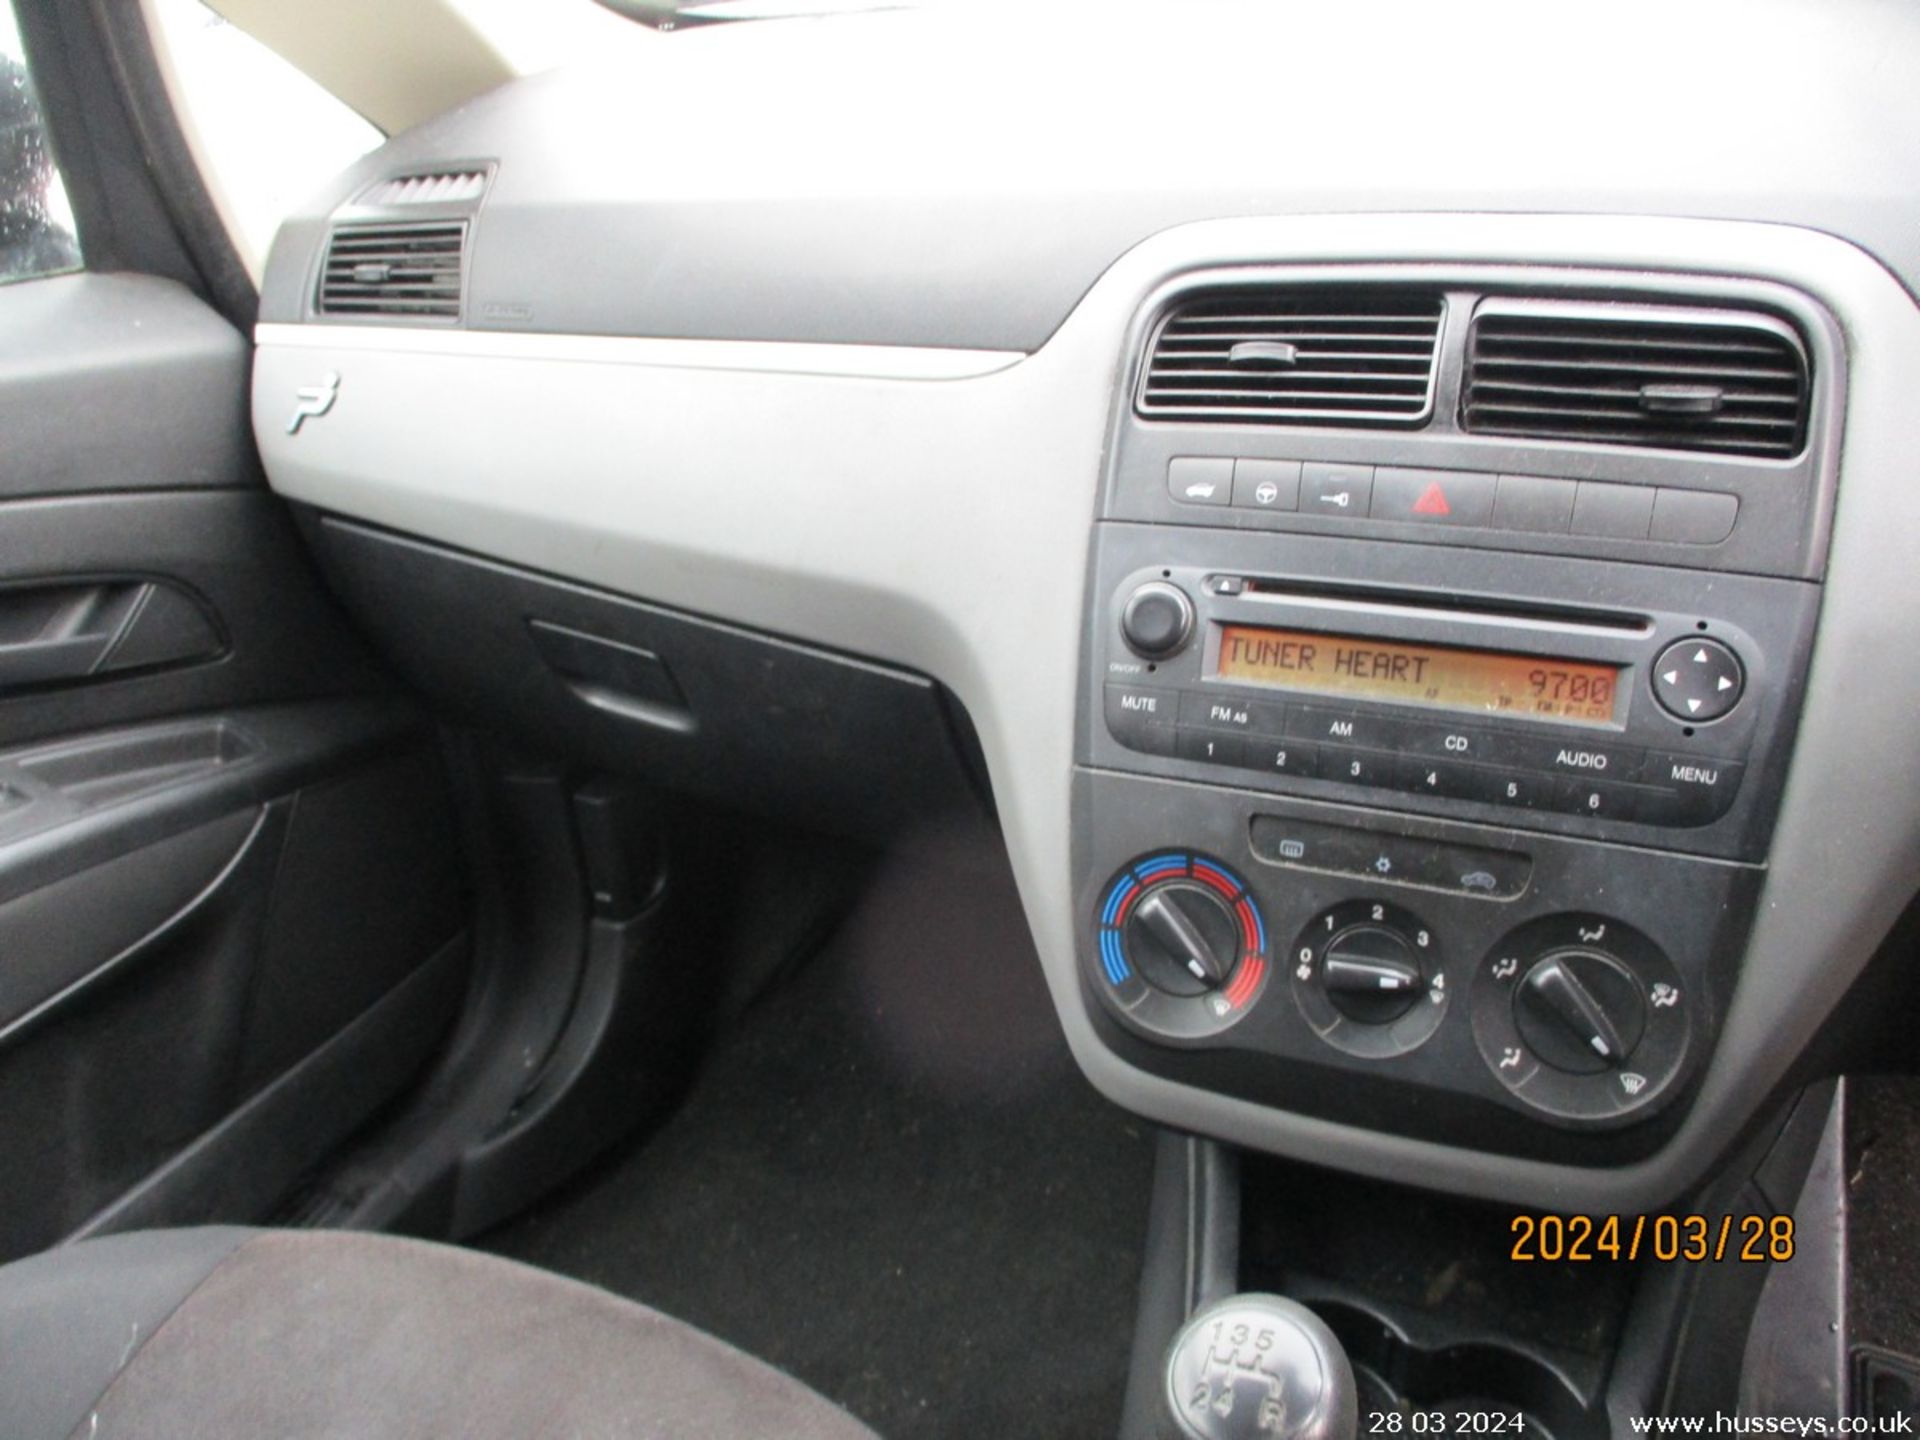 08/58 FIAT GRAND PUNTO ACTIVE 360 - 1242cc 5dr Hatchback (Grey, 97k) - Image 16 of 17